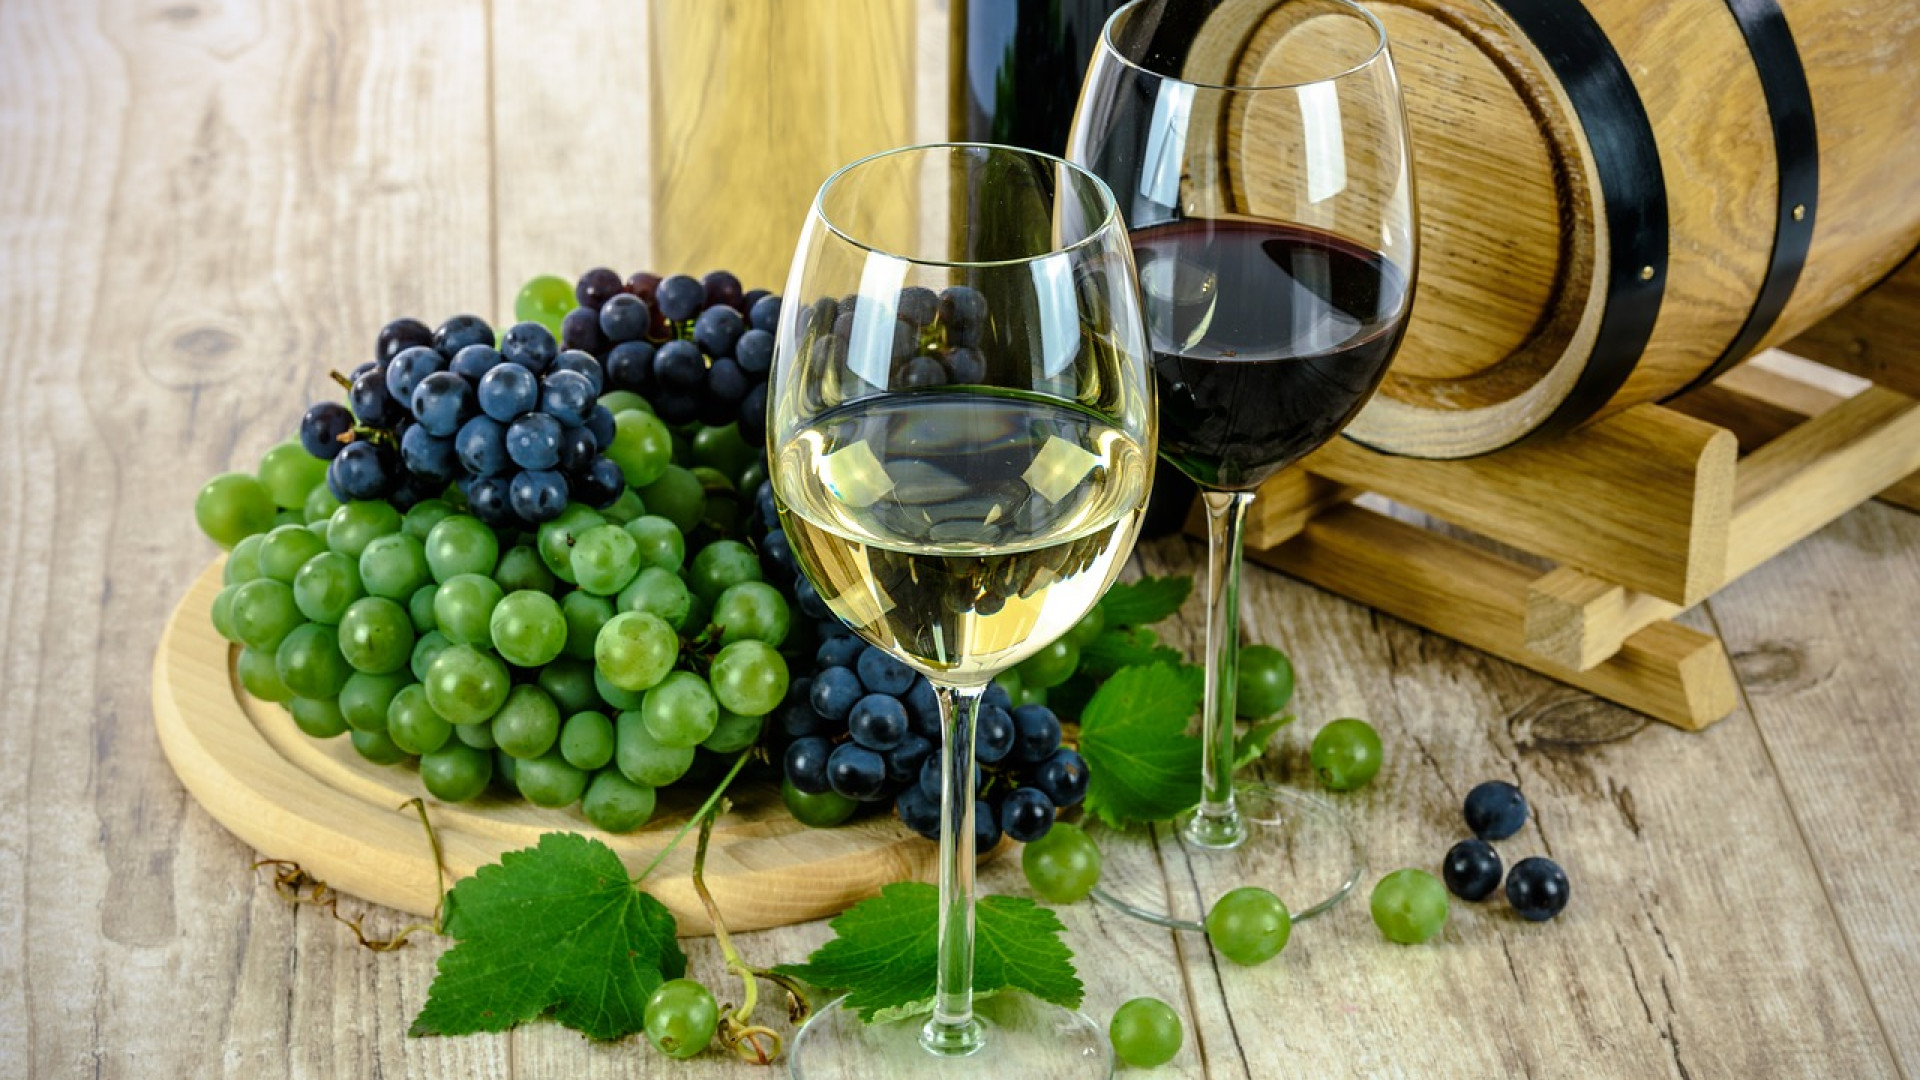 Comment être certain d’acheter du bon vin ?